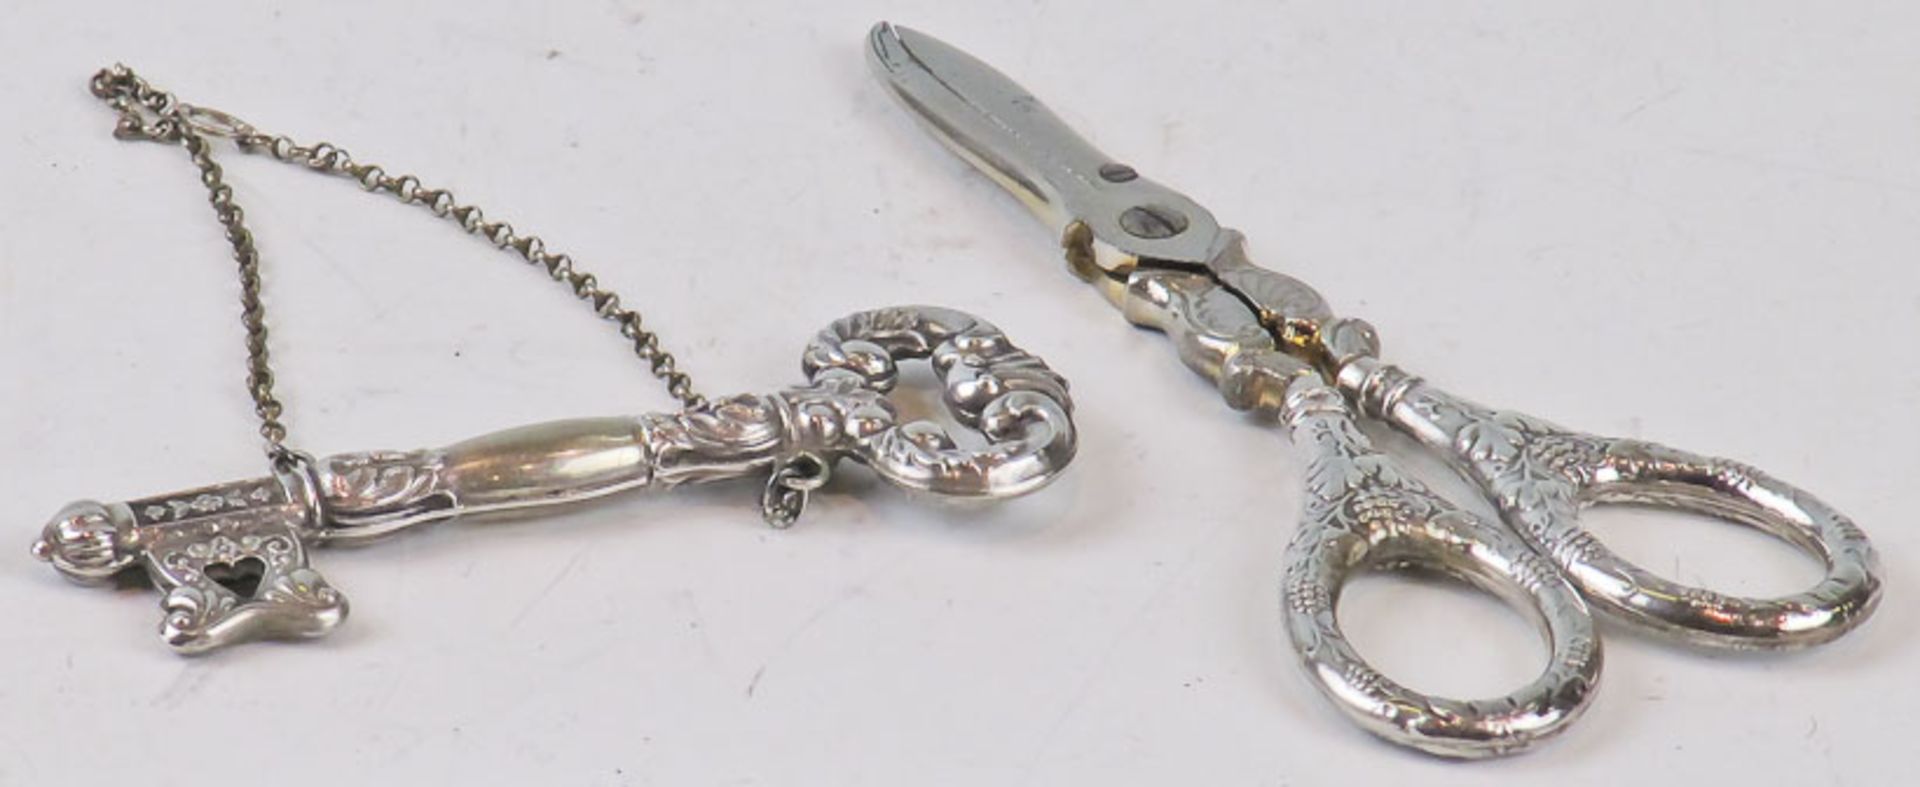 Biedermeier-Nadelbüchse als Schlüsselan Kettchenaufhängung. Lg. 10 cm. Beigegeben: Tr